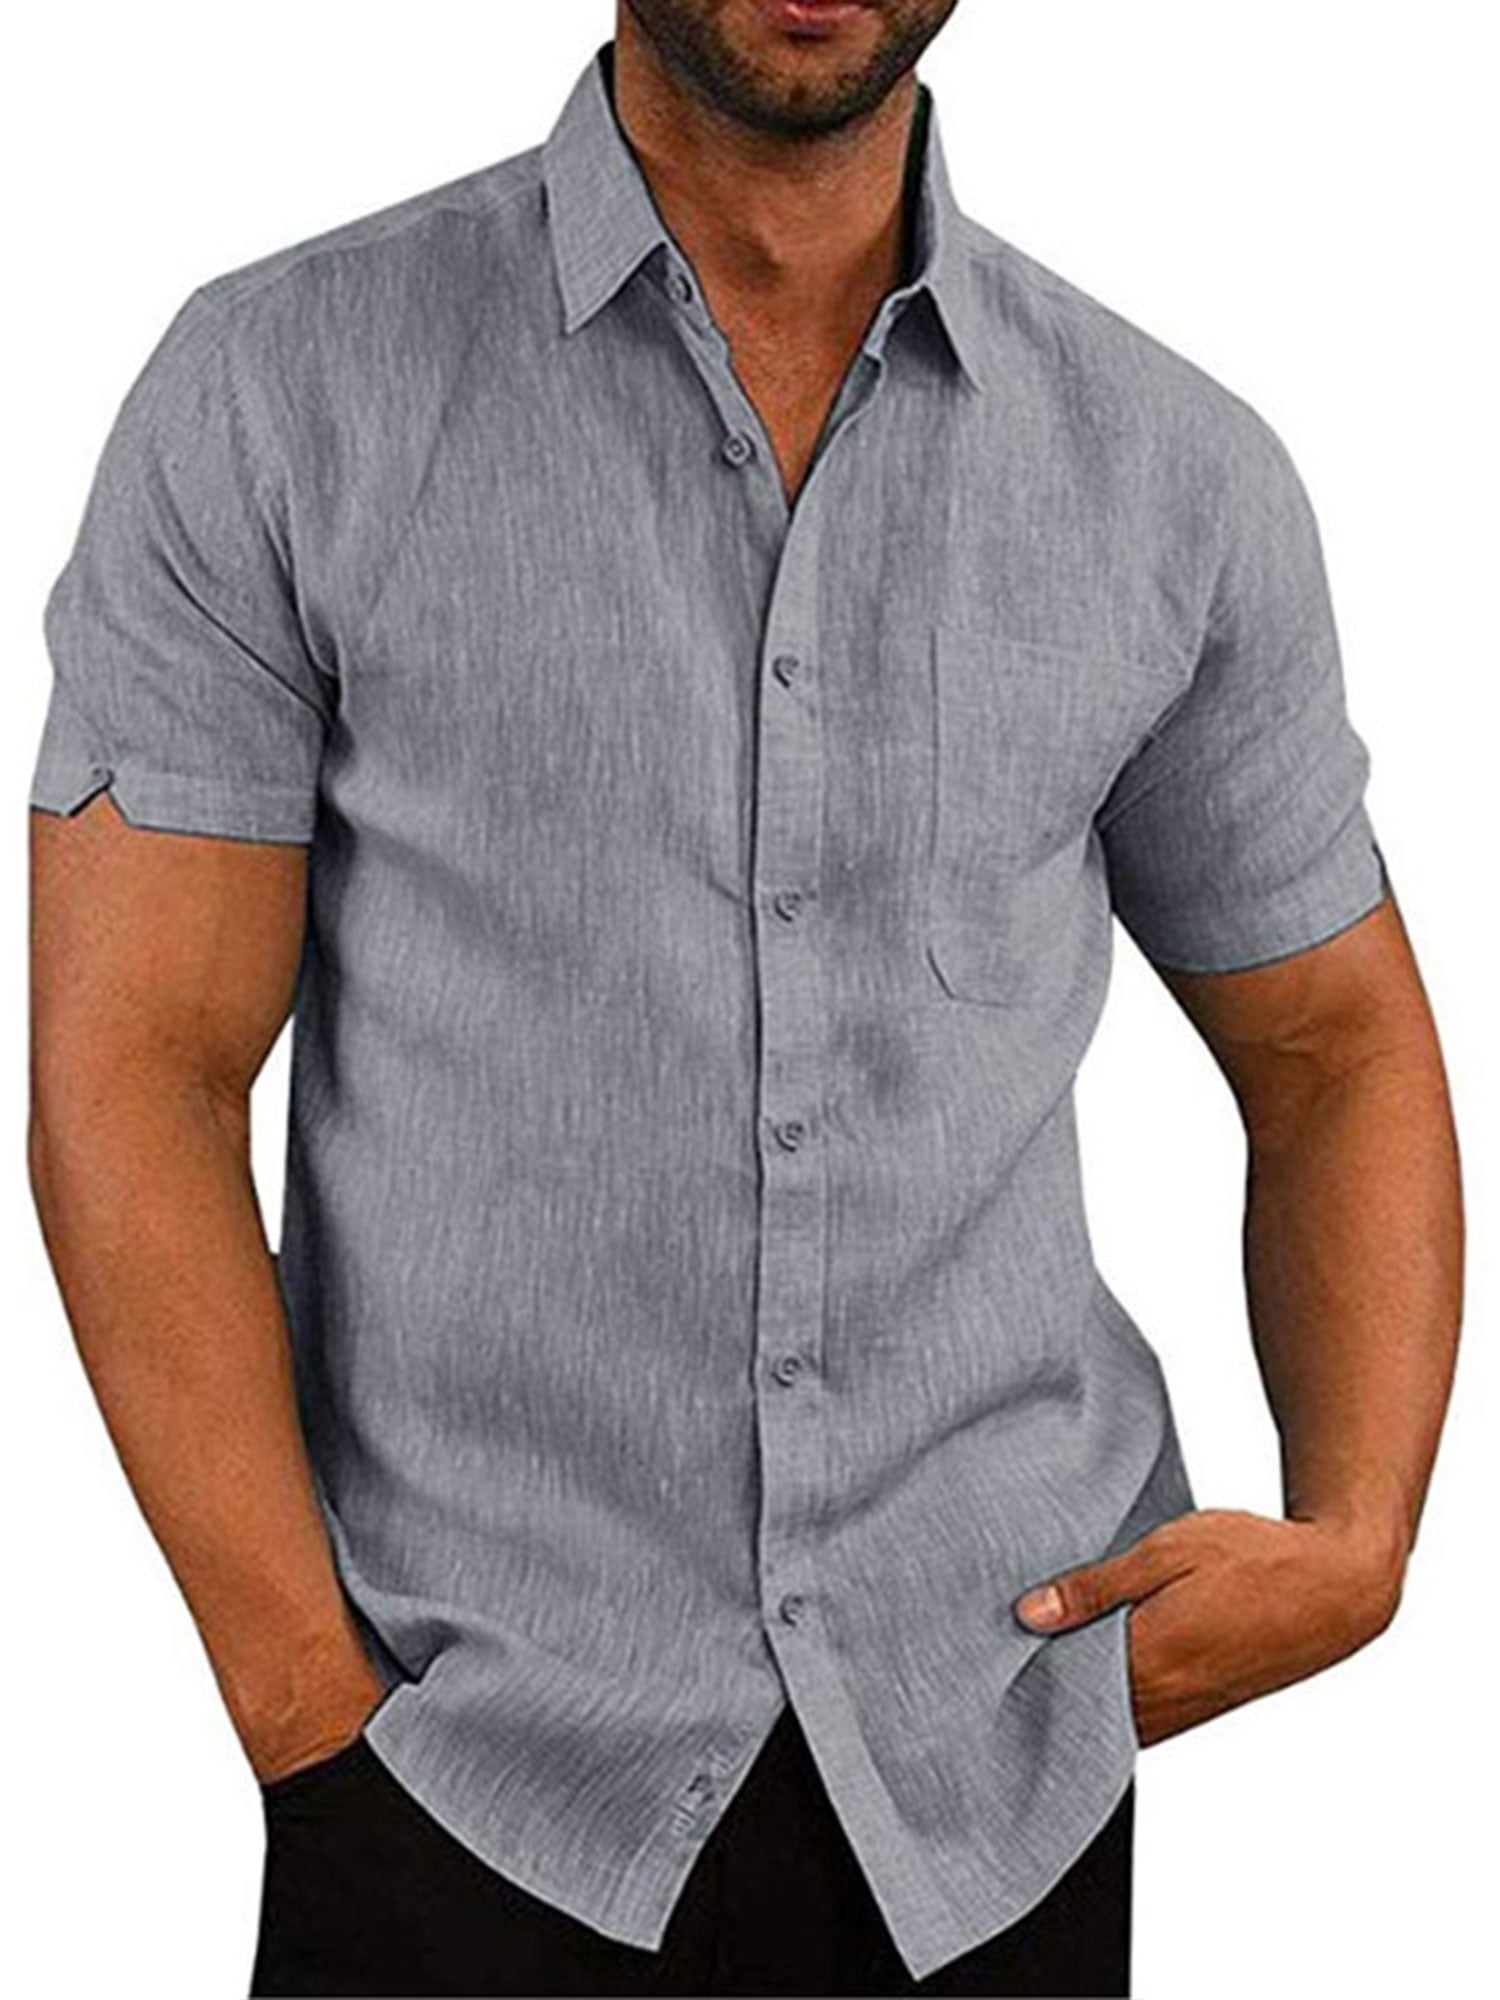 KLJR Men Summer Short Sleeve Floral Non-Iron Leisure Button up Dress Shirts